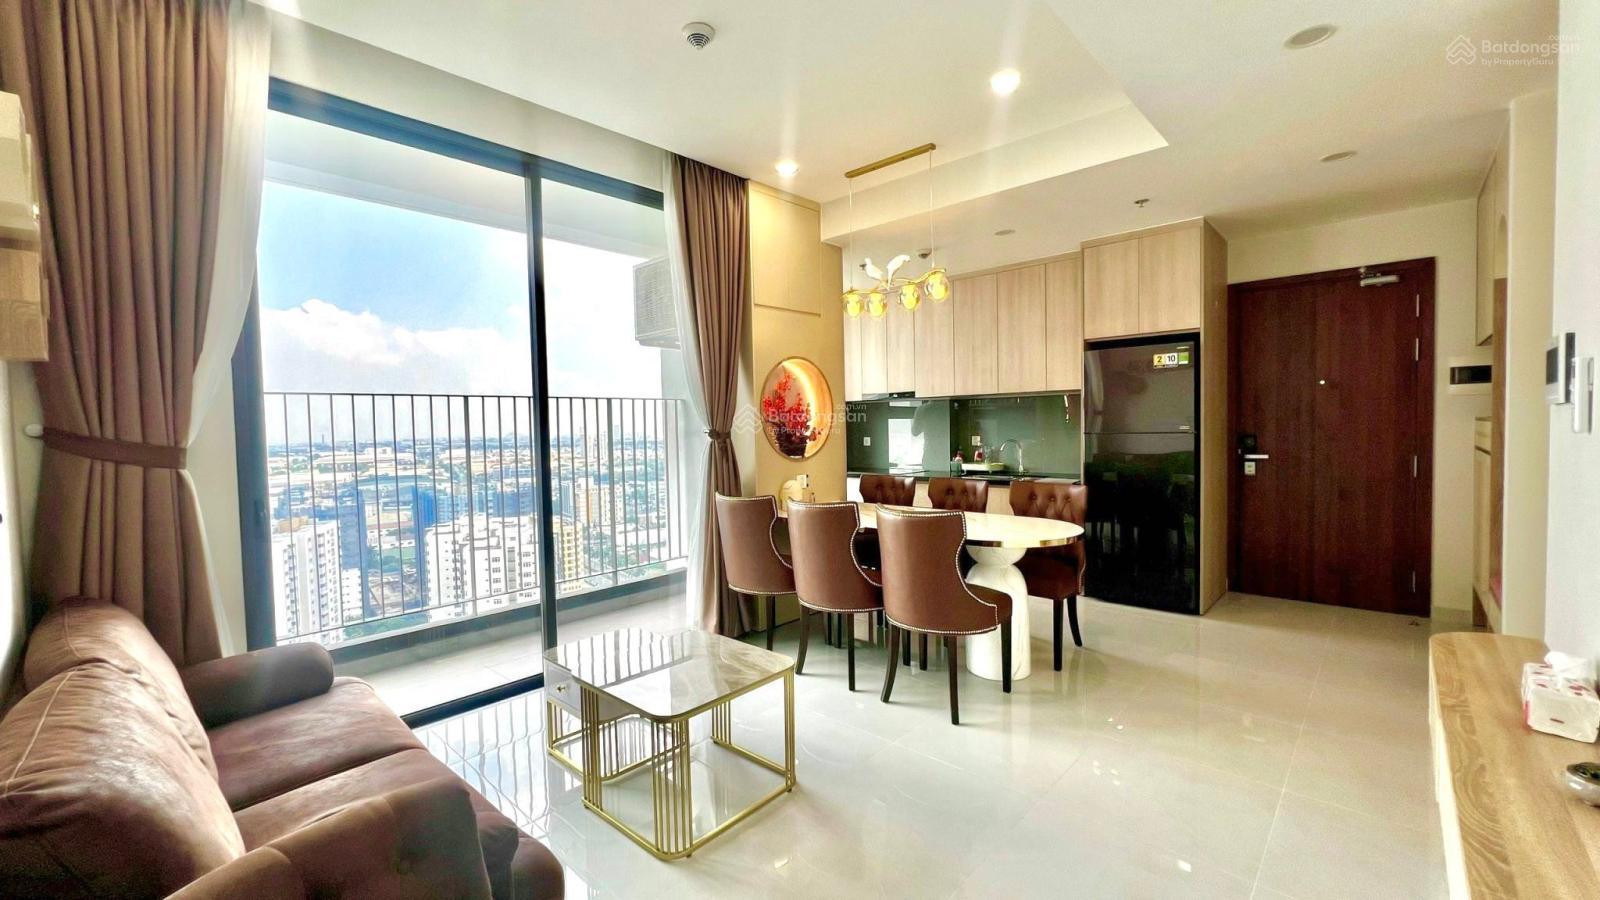 Chính chủ gửi bán gấp lỗ 700tr căn hộ 2 phòng ngủ 72m2 tại chung cư Emerald Golf View Thuận An - Ảnh 2